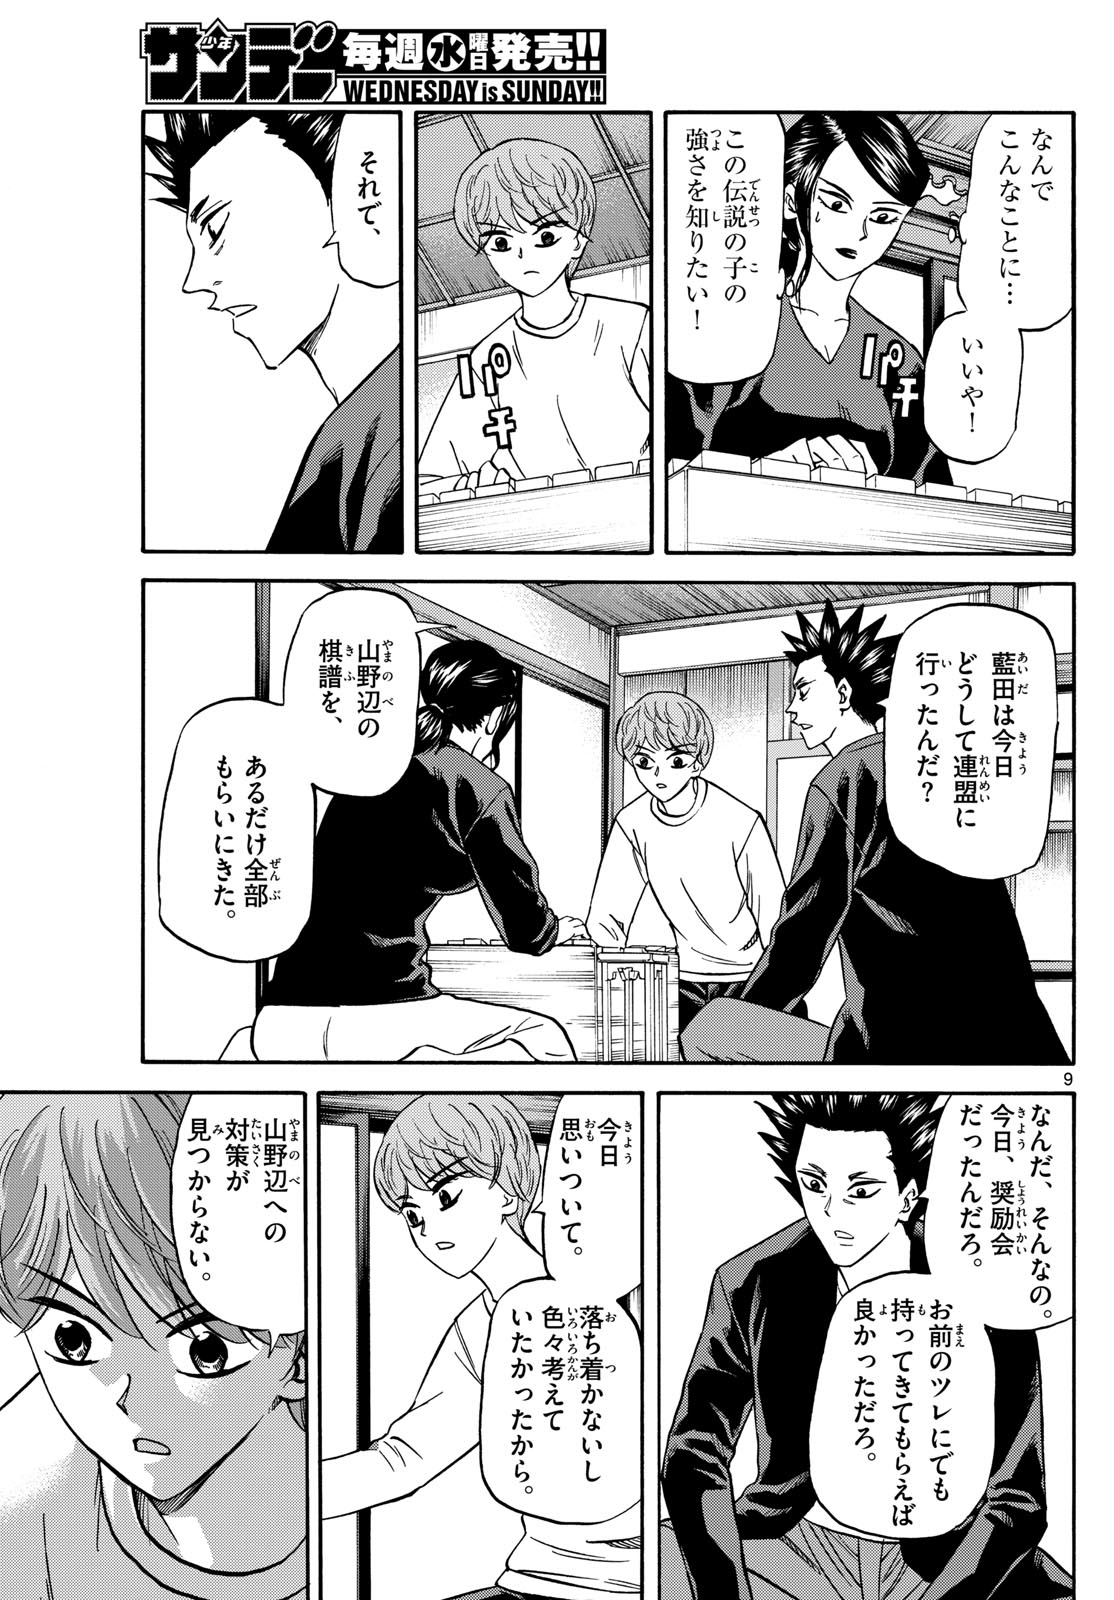 Tatsu to Ichigo - Chapter 173 - Page 9